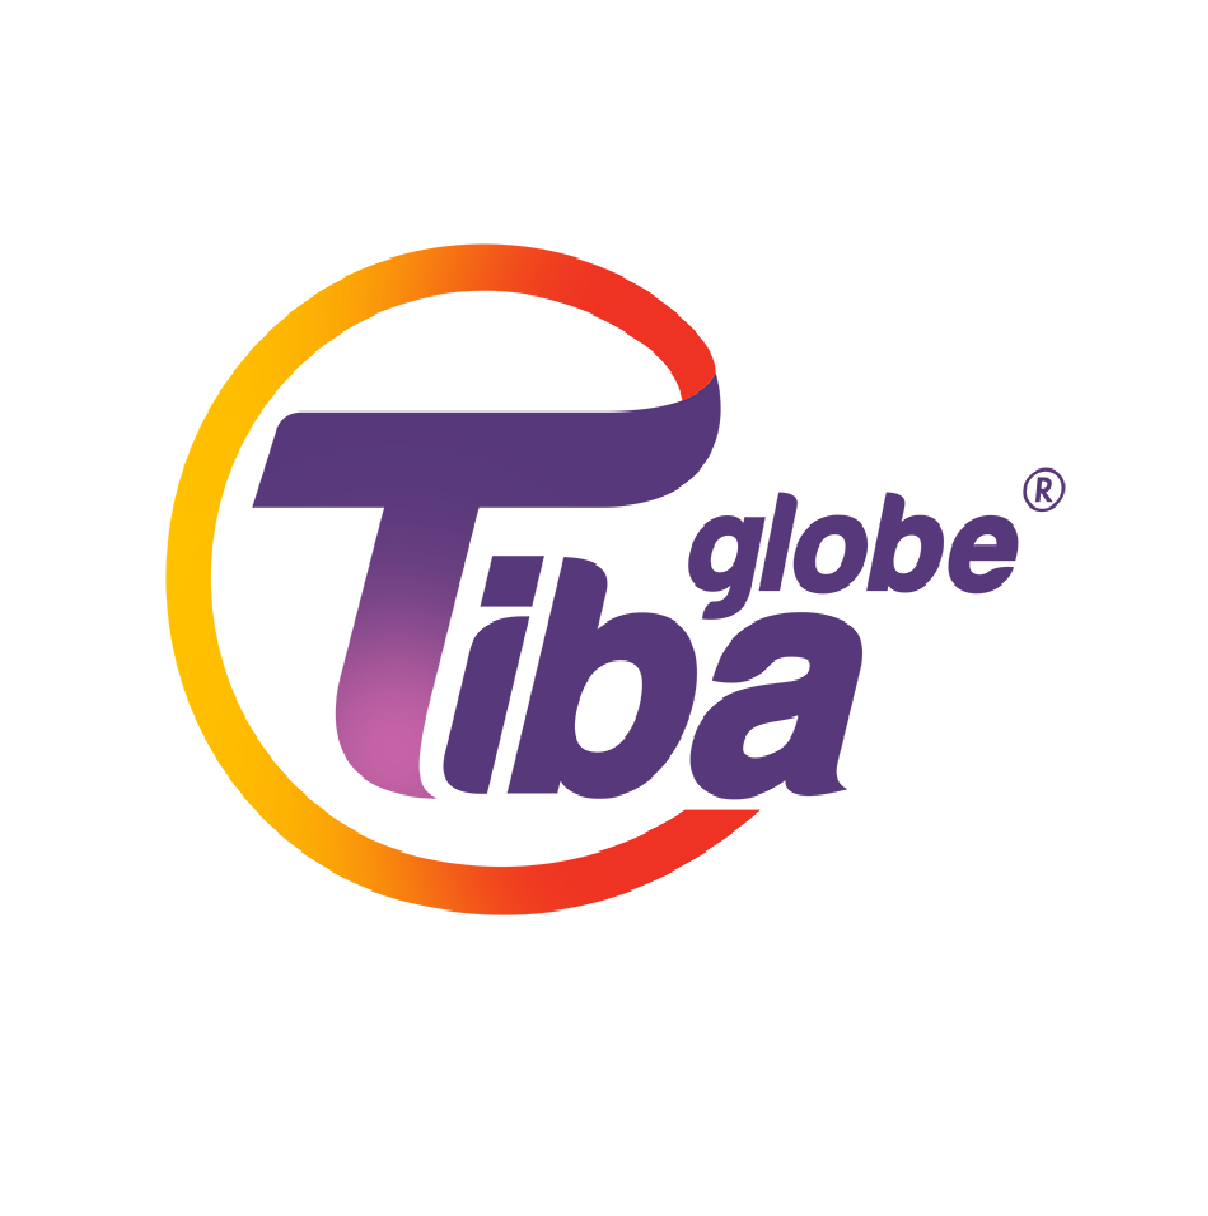 Tiba globe